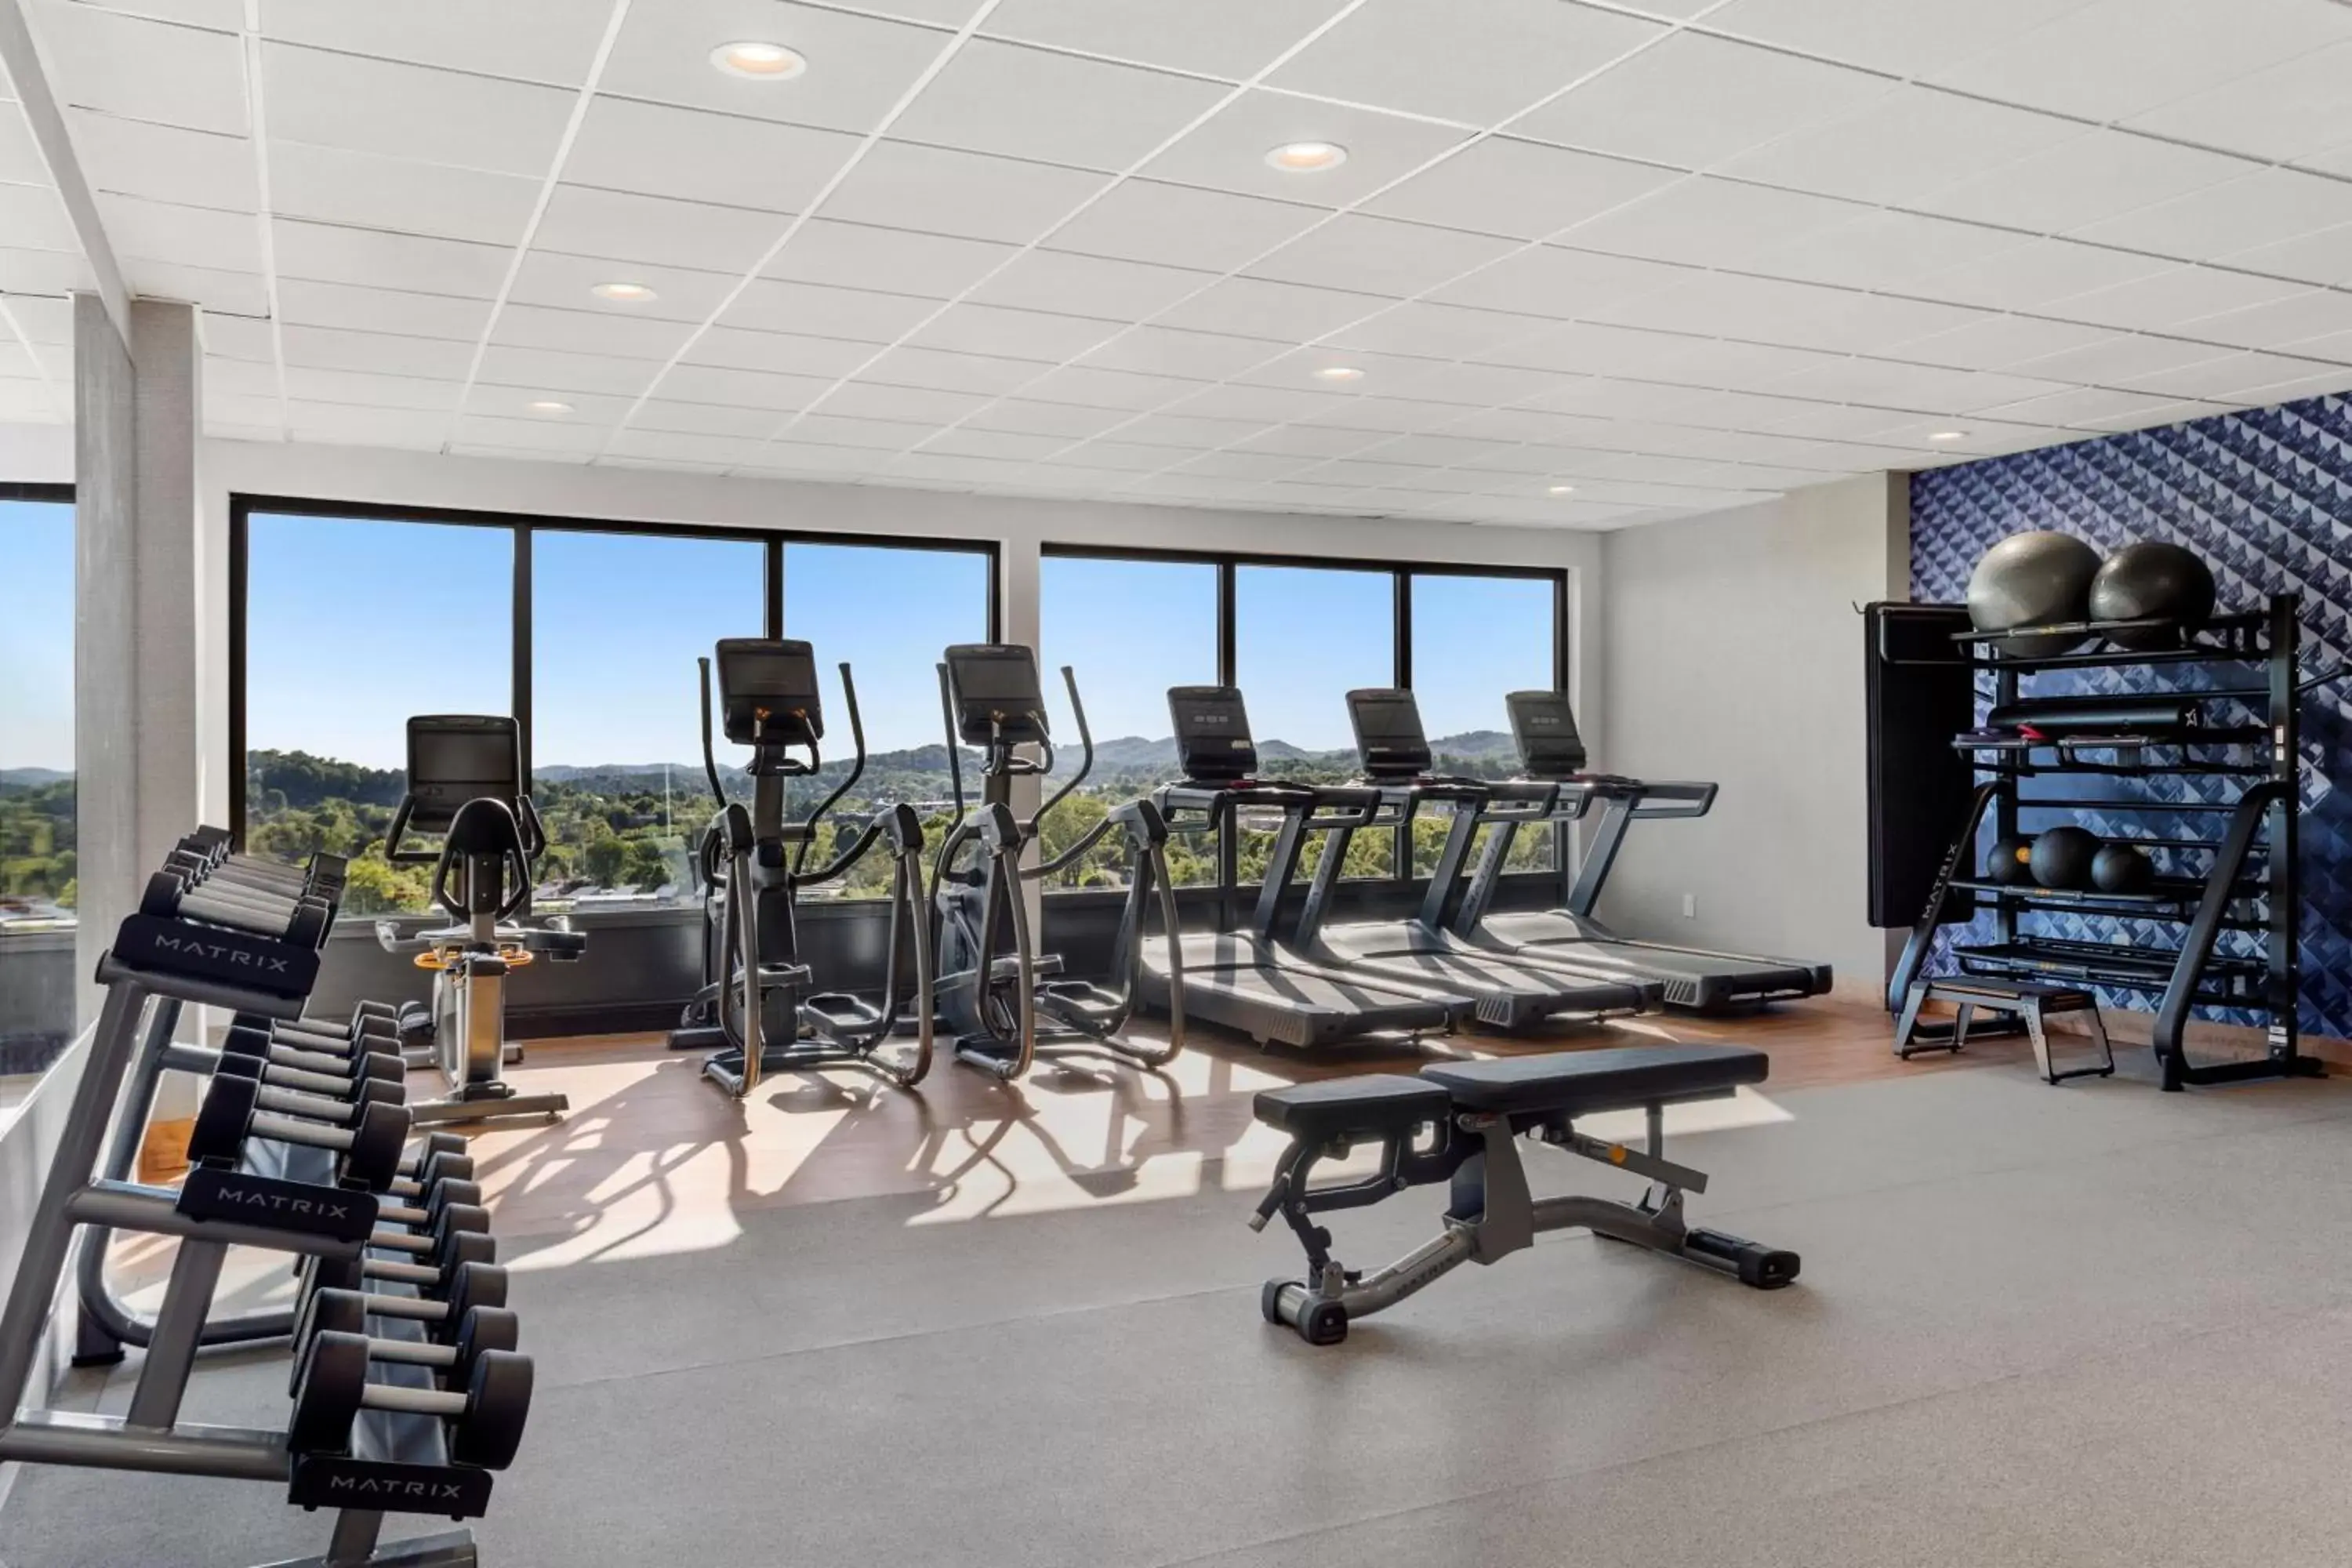 Fitness centre/facilities, Fitness Center/Facilities in Delta Hotels by Marriott Bristol